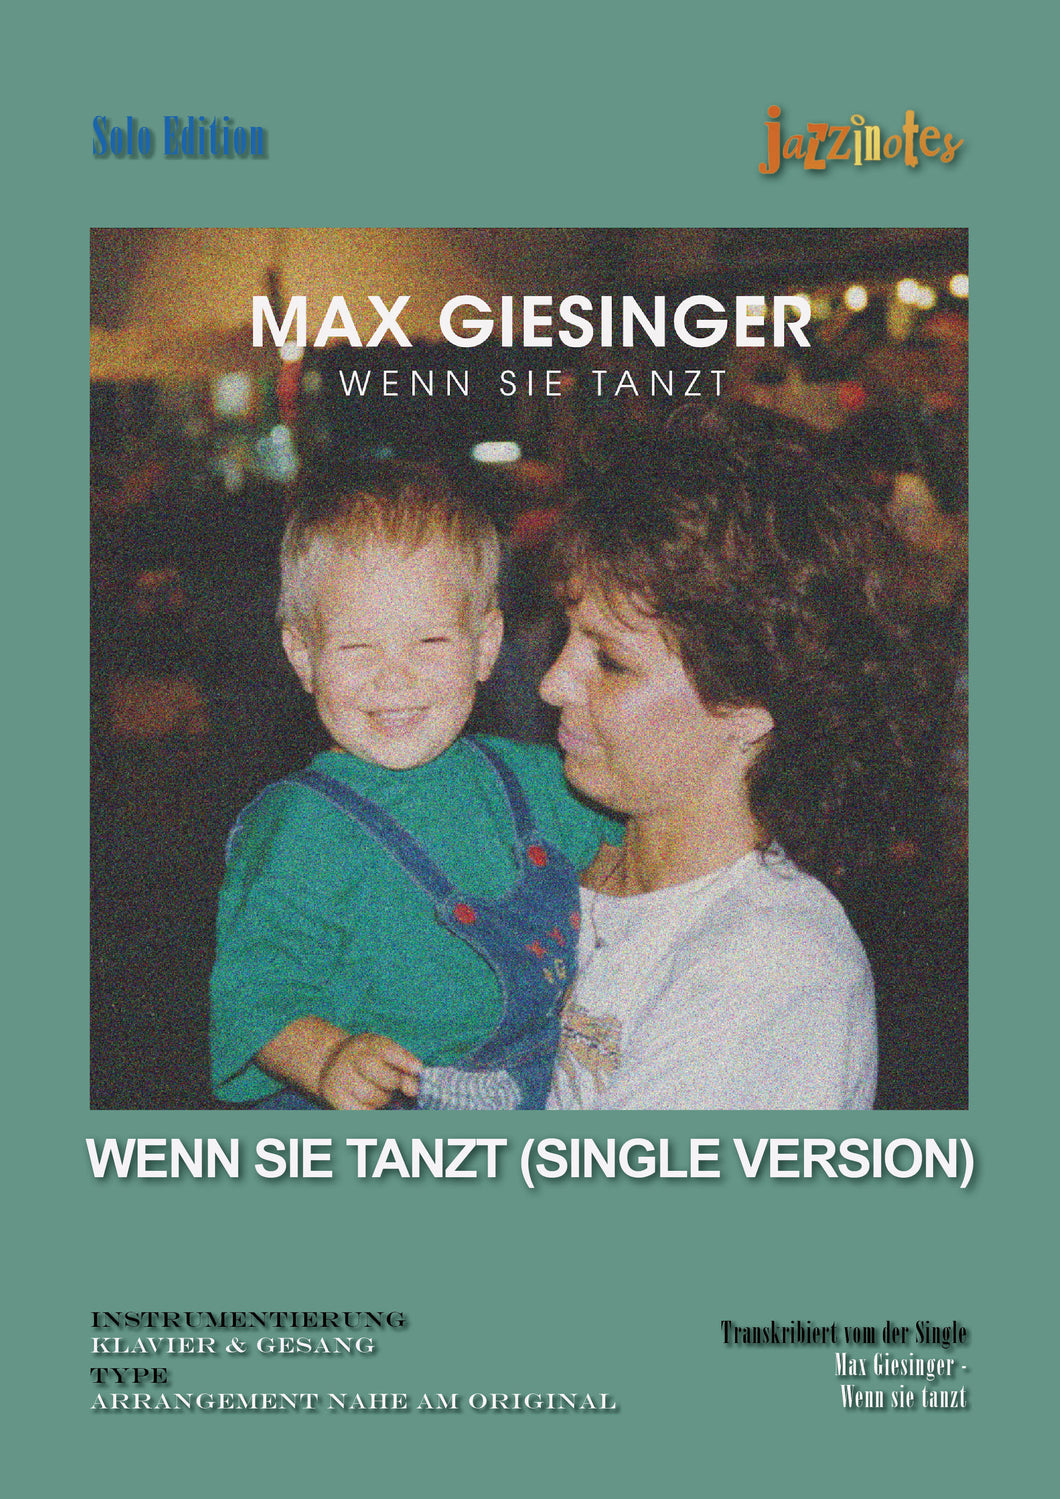 Giesinger, Max: Wenn sie tanzt - Sheet Music Download